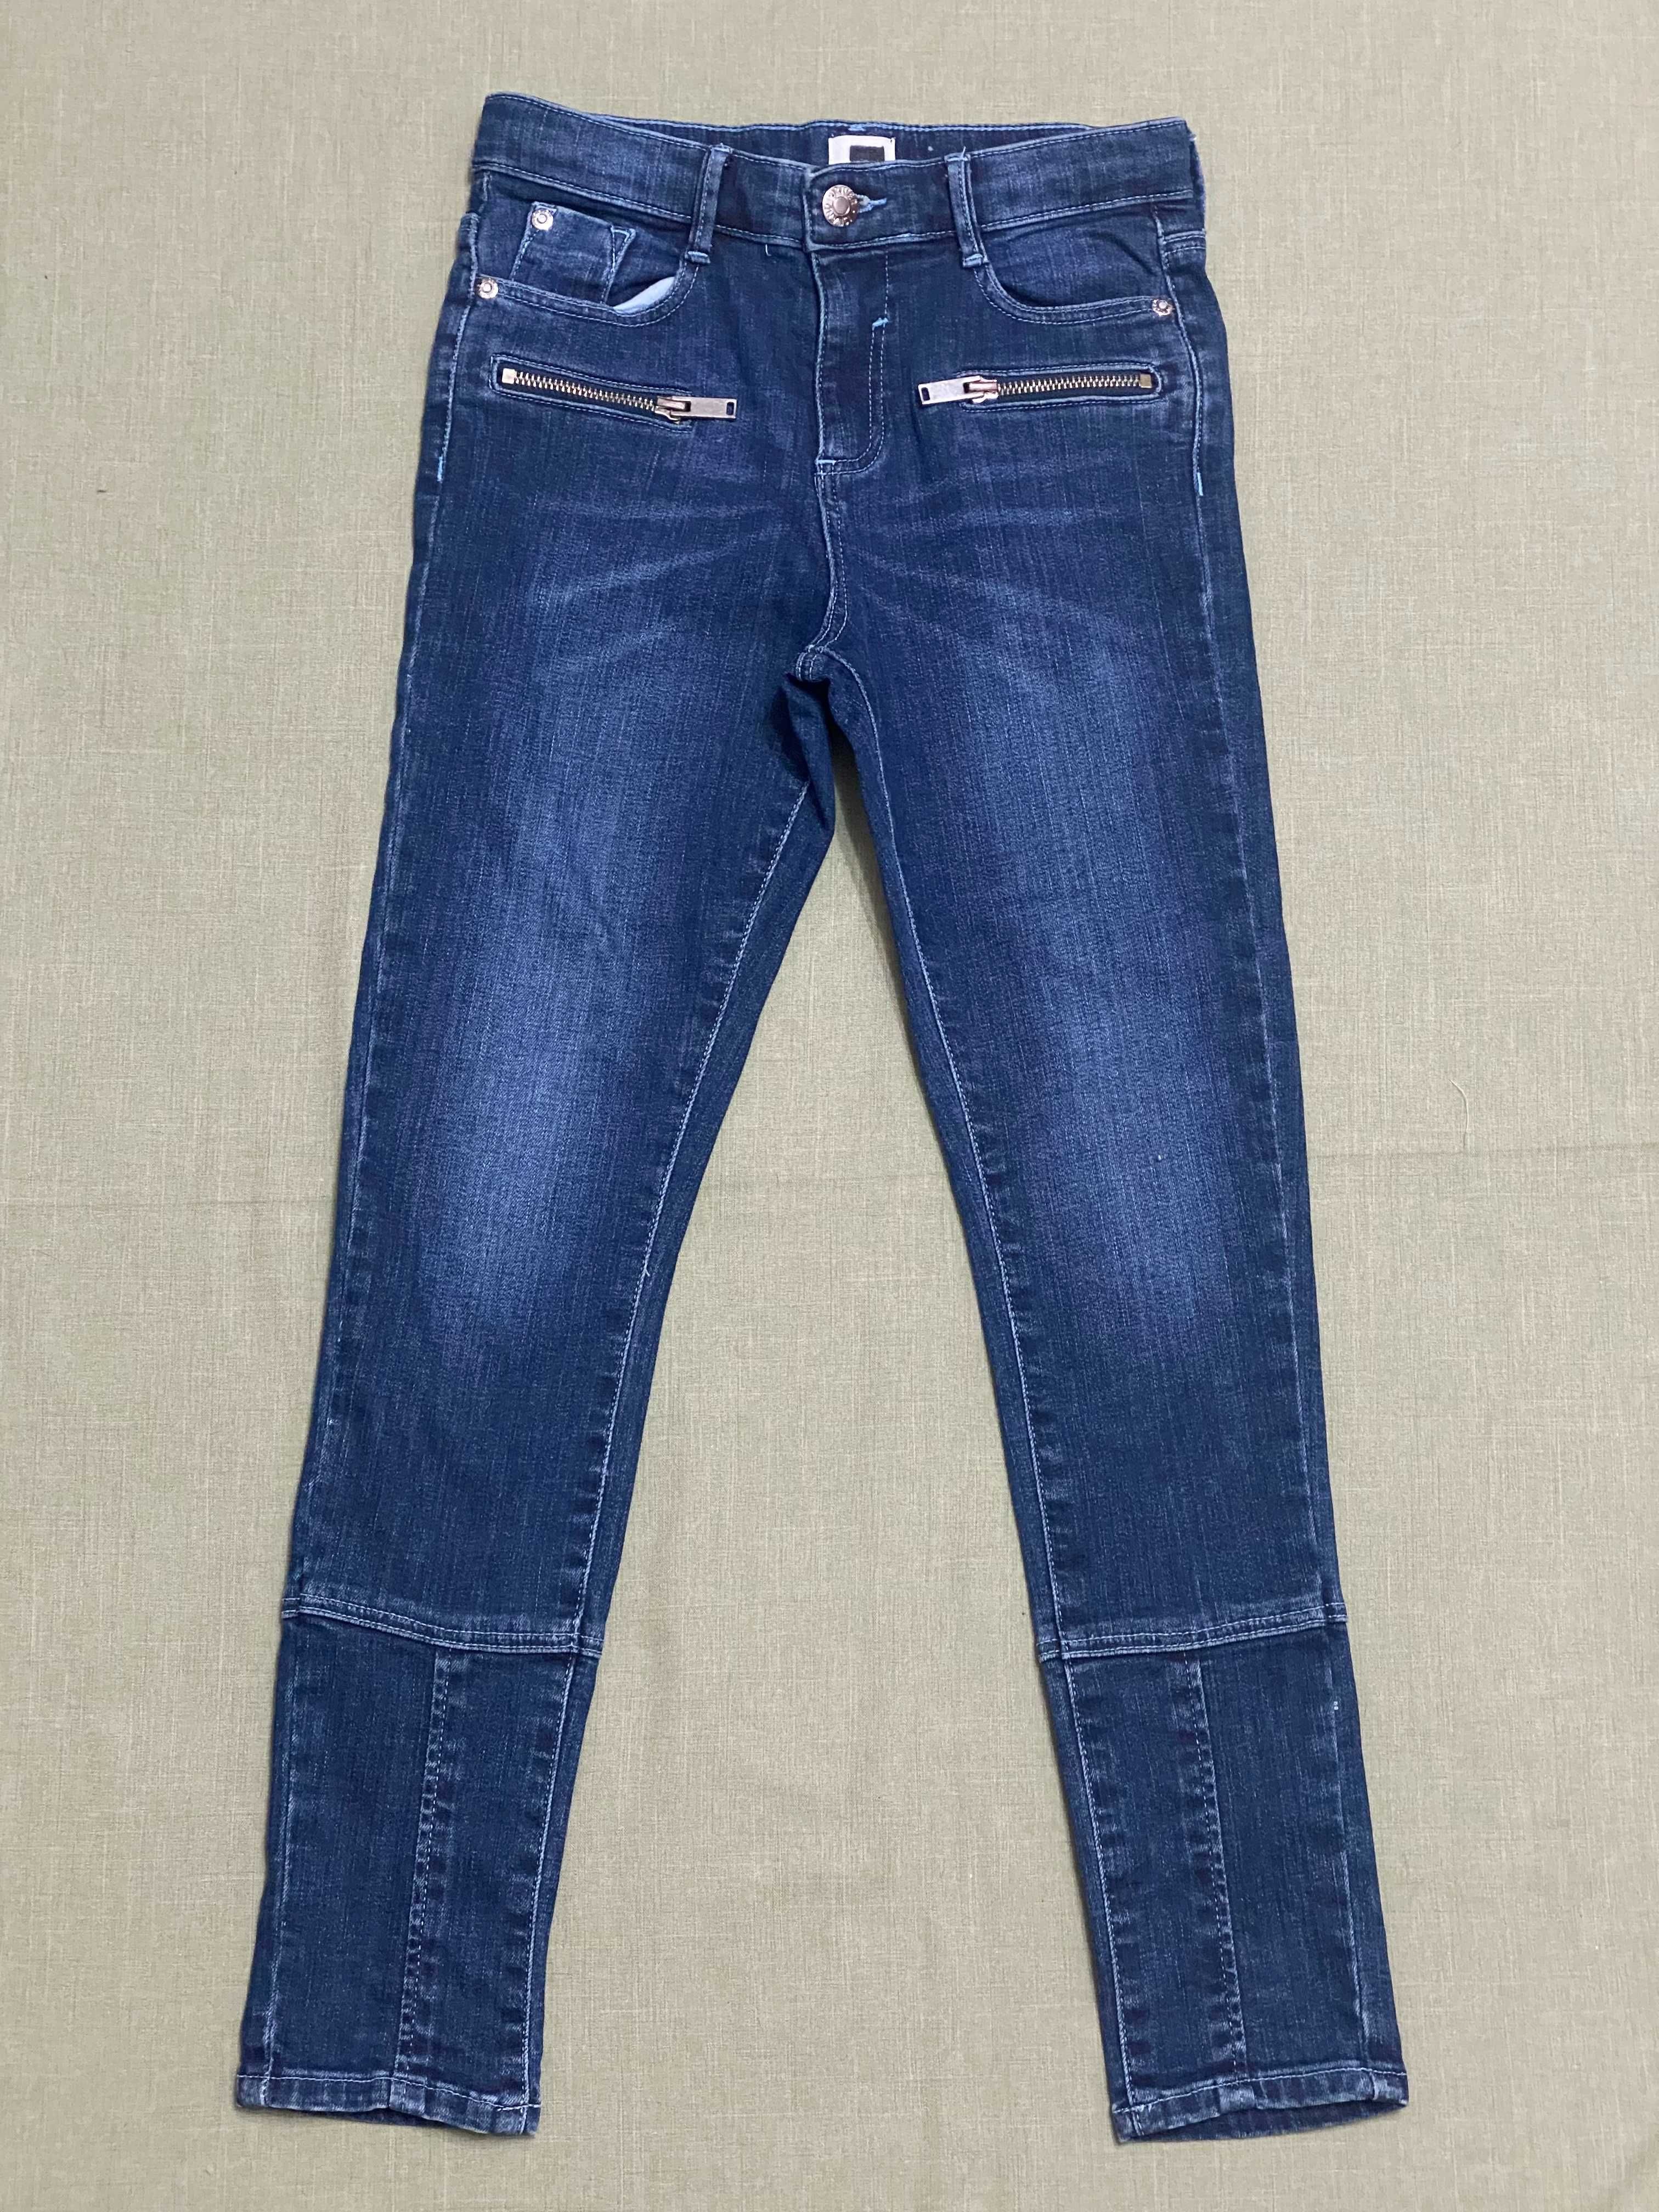 Набор одежды девочке 10-11 лет 140 см укороченный лонгслив и джинсы